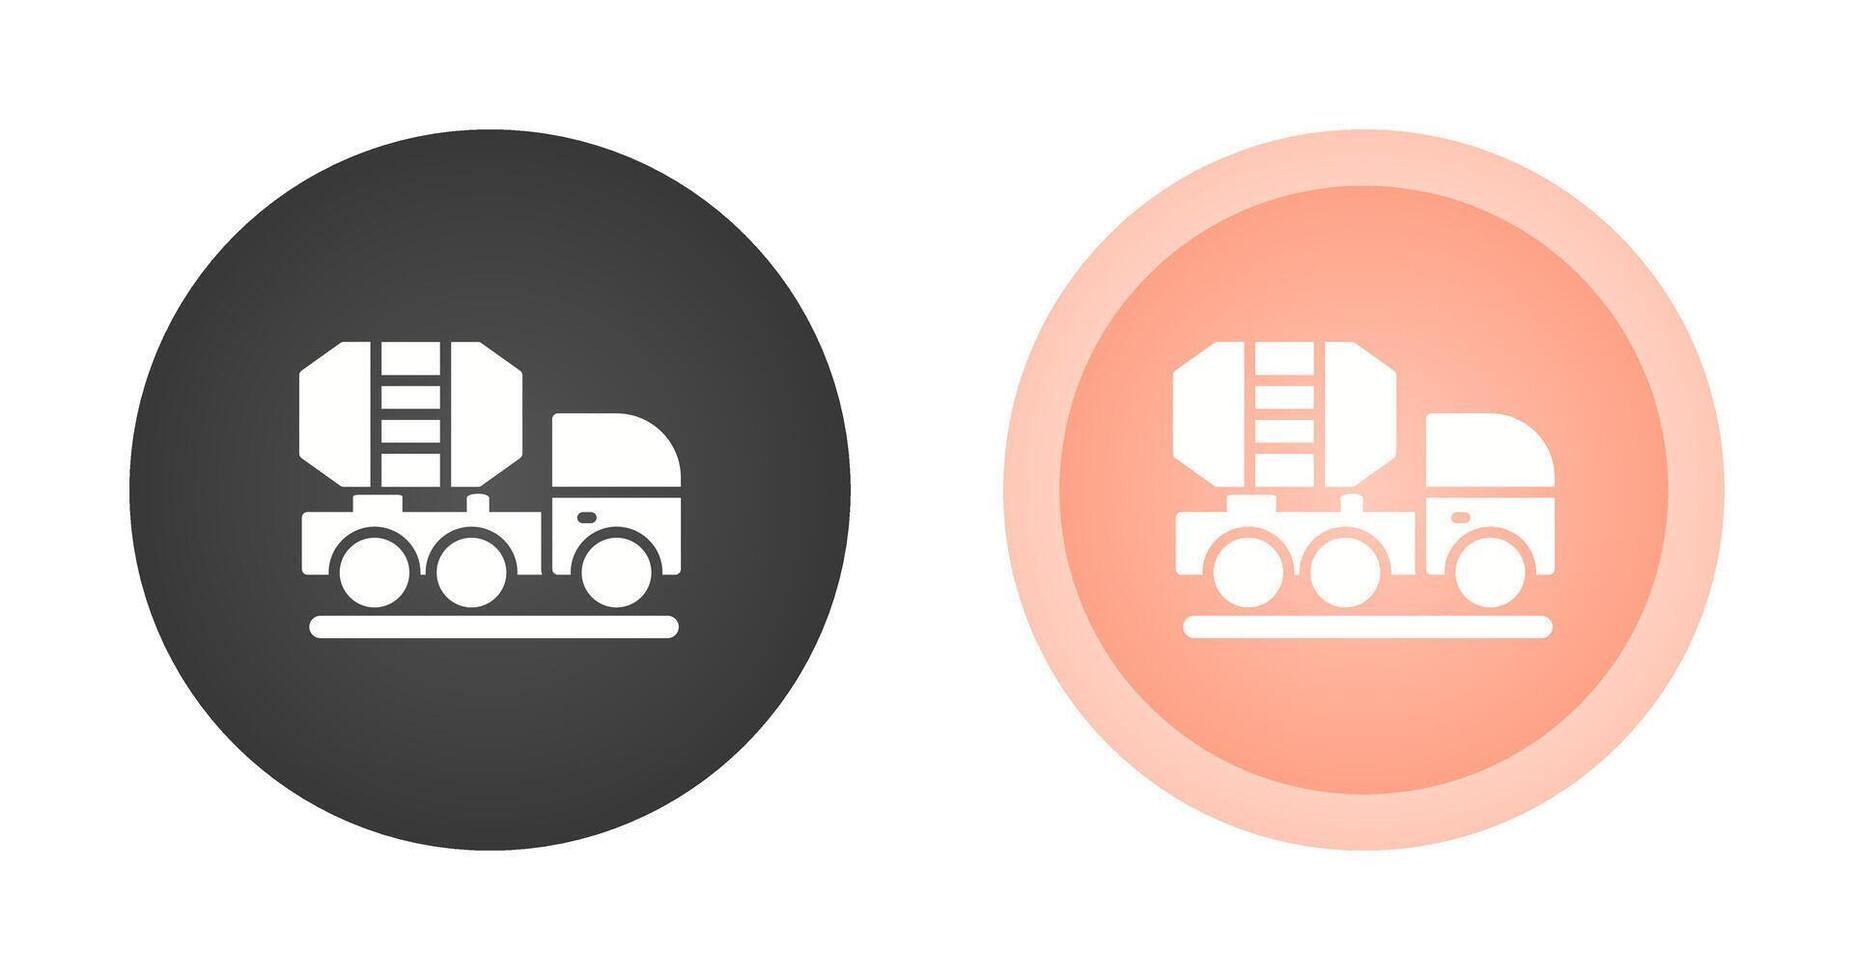 icône de vecteur de camion malaxeur